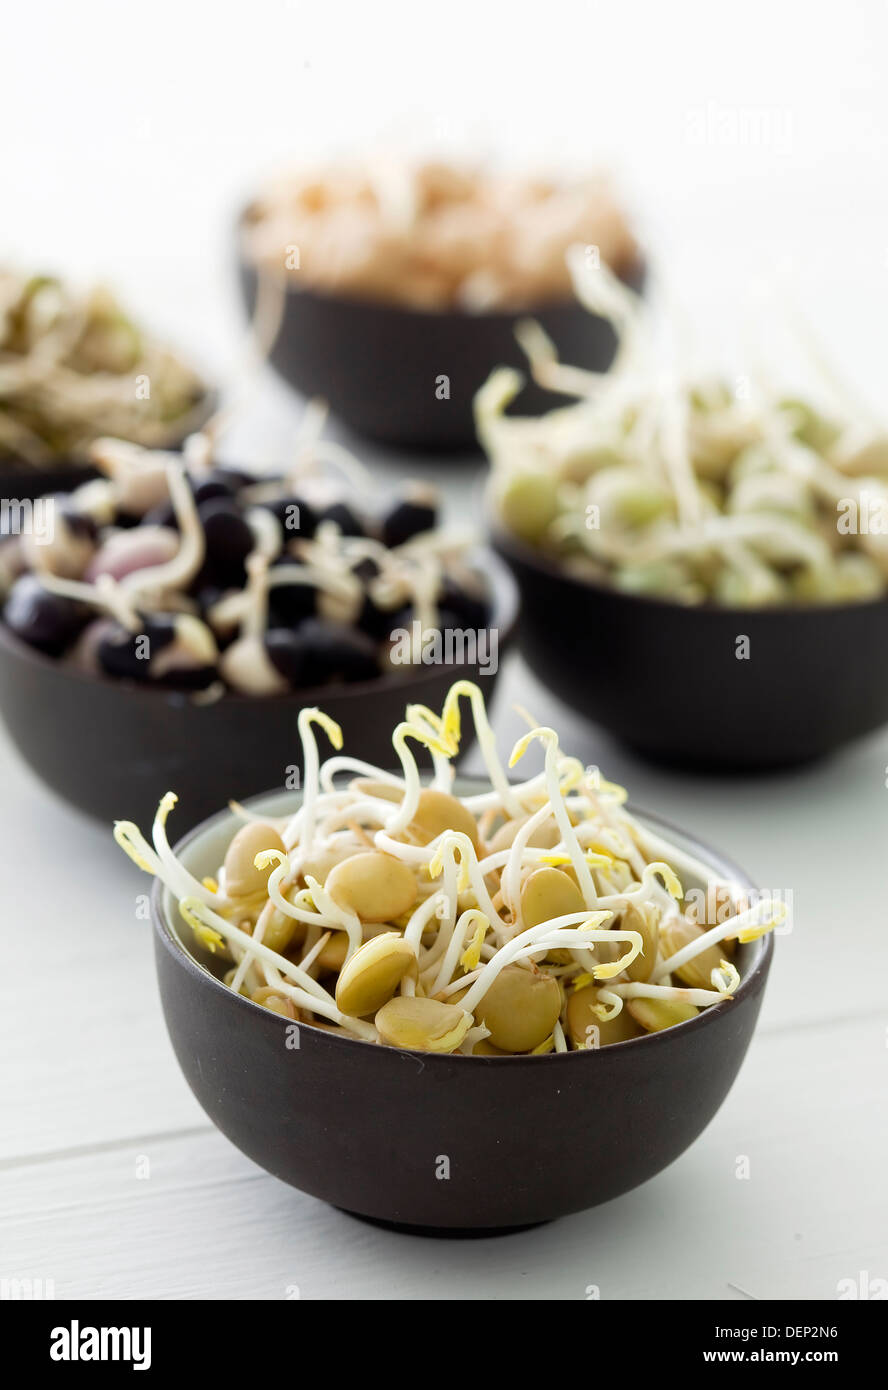 Kleine schwarze Schalen gefüllt mit verschiedenen Keimen Hülsenfrüchte und Hülsenfrüchte; Rosenkohl, Erbsen, Bohnen und Linsen. Stockfoto